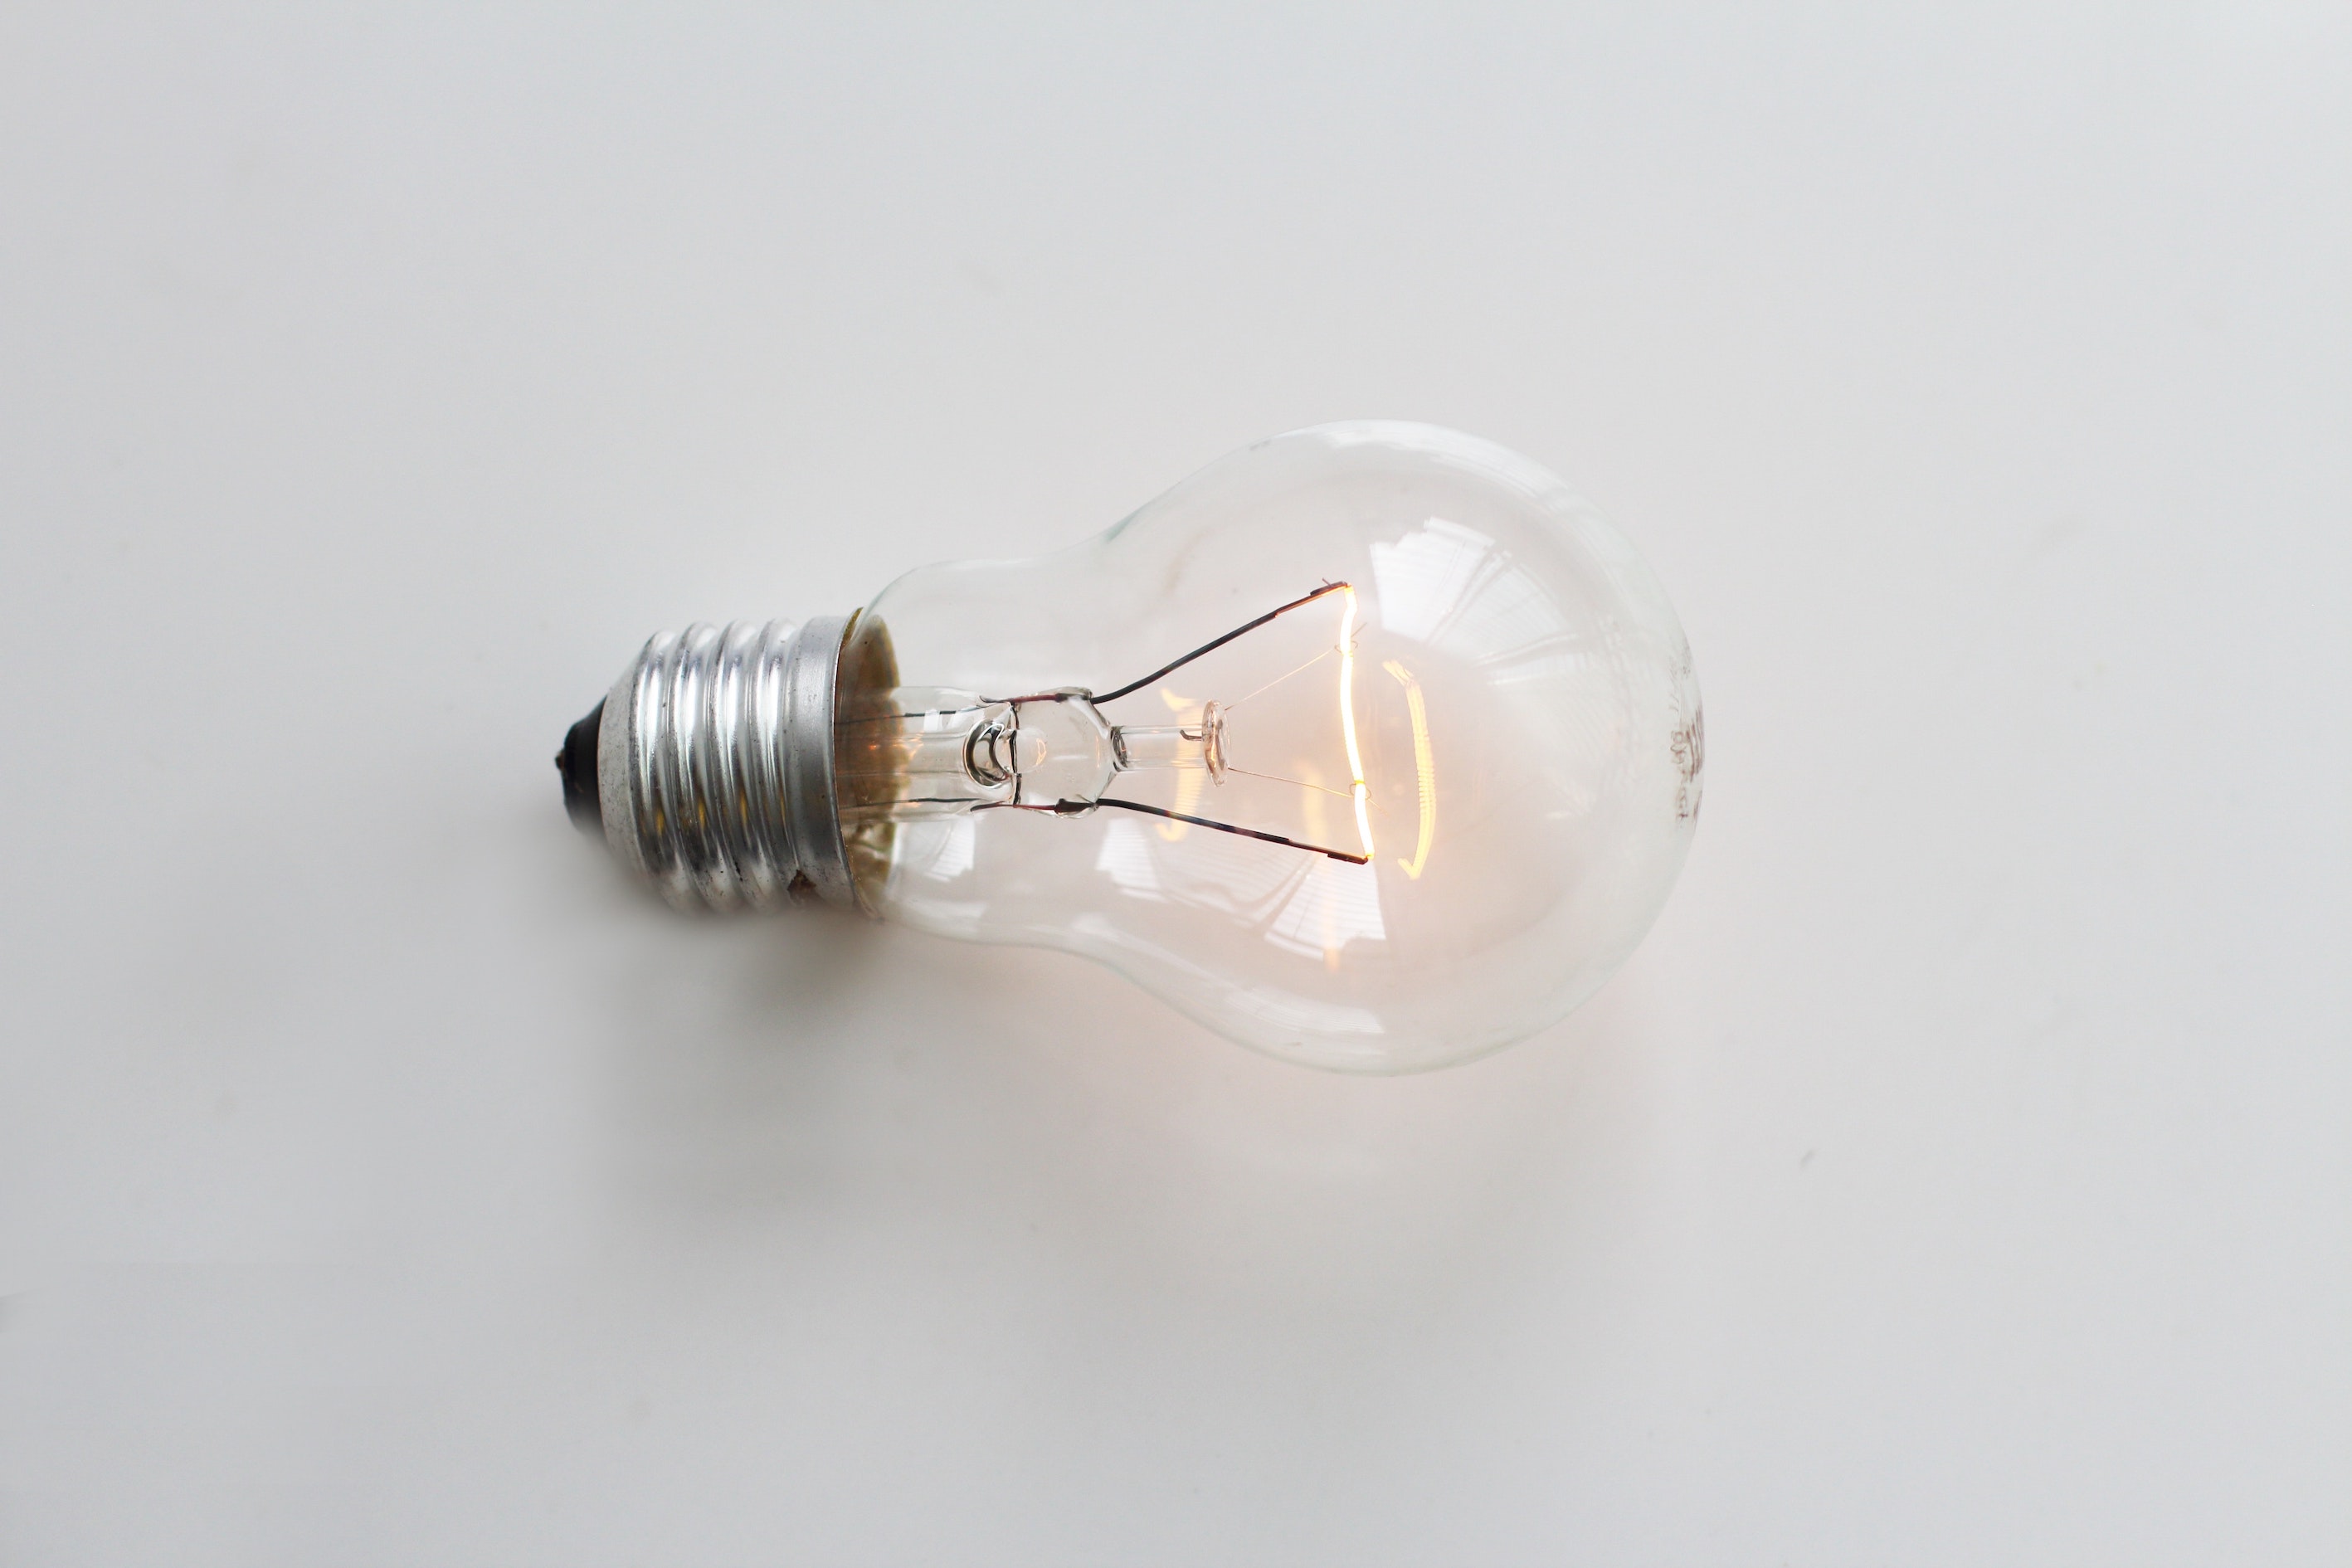 Lightbulb image from Pexels